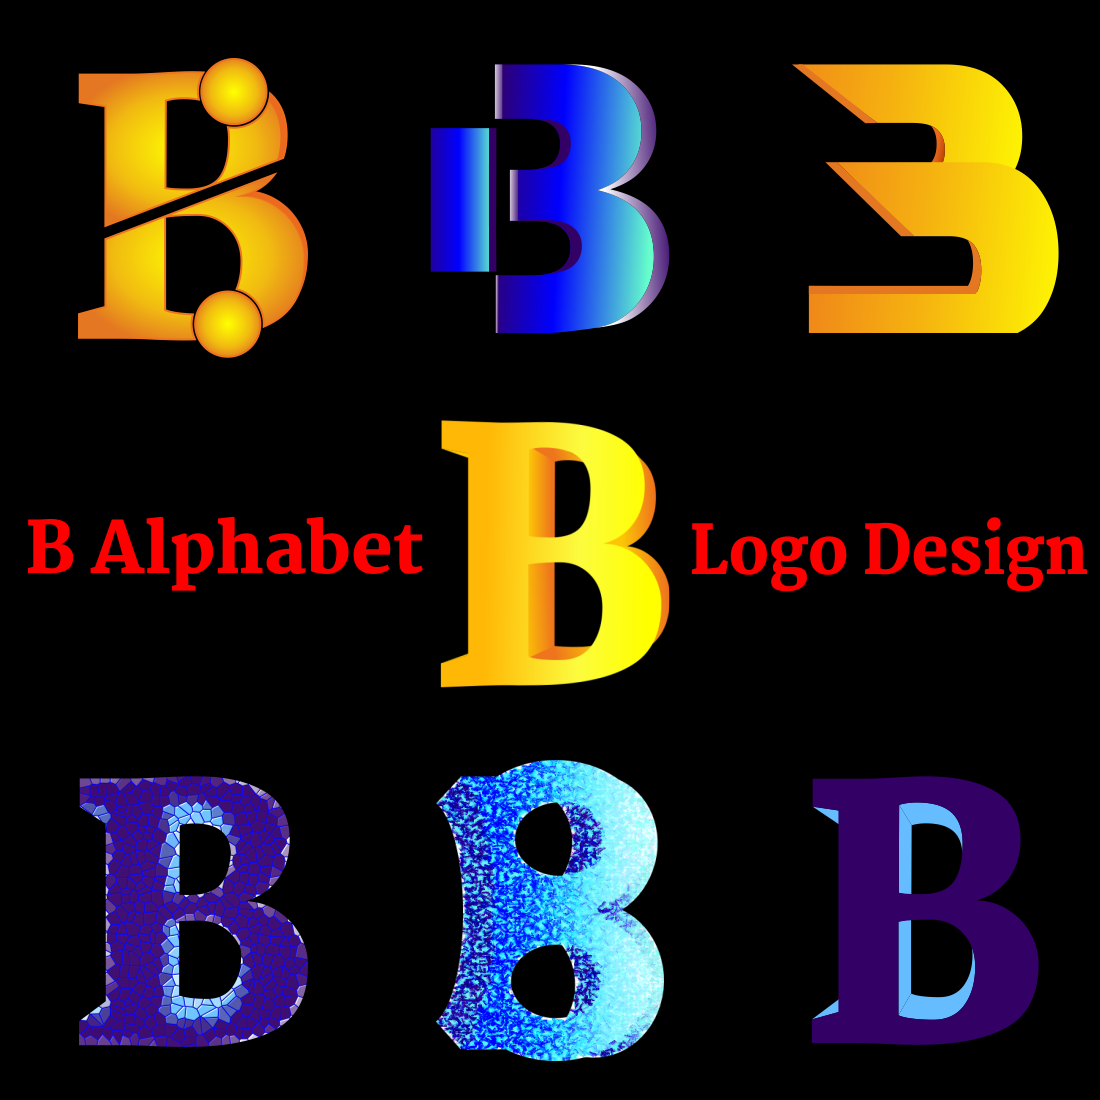 B alphabet logo design preview image.